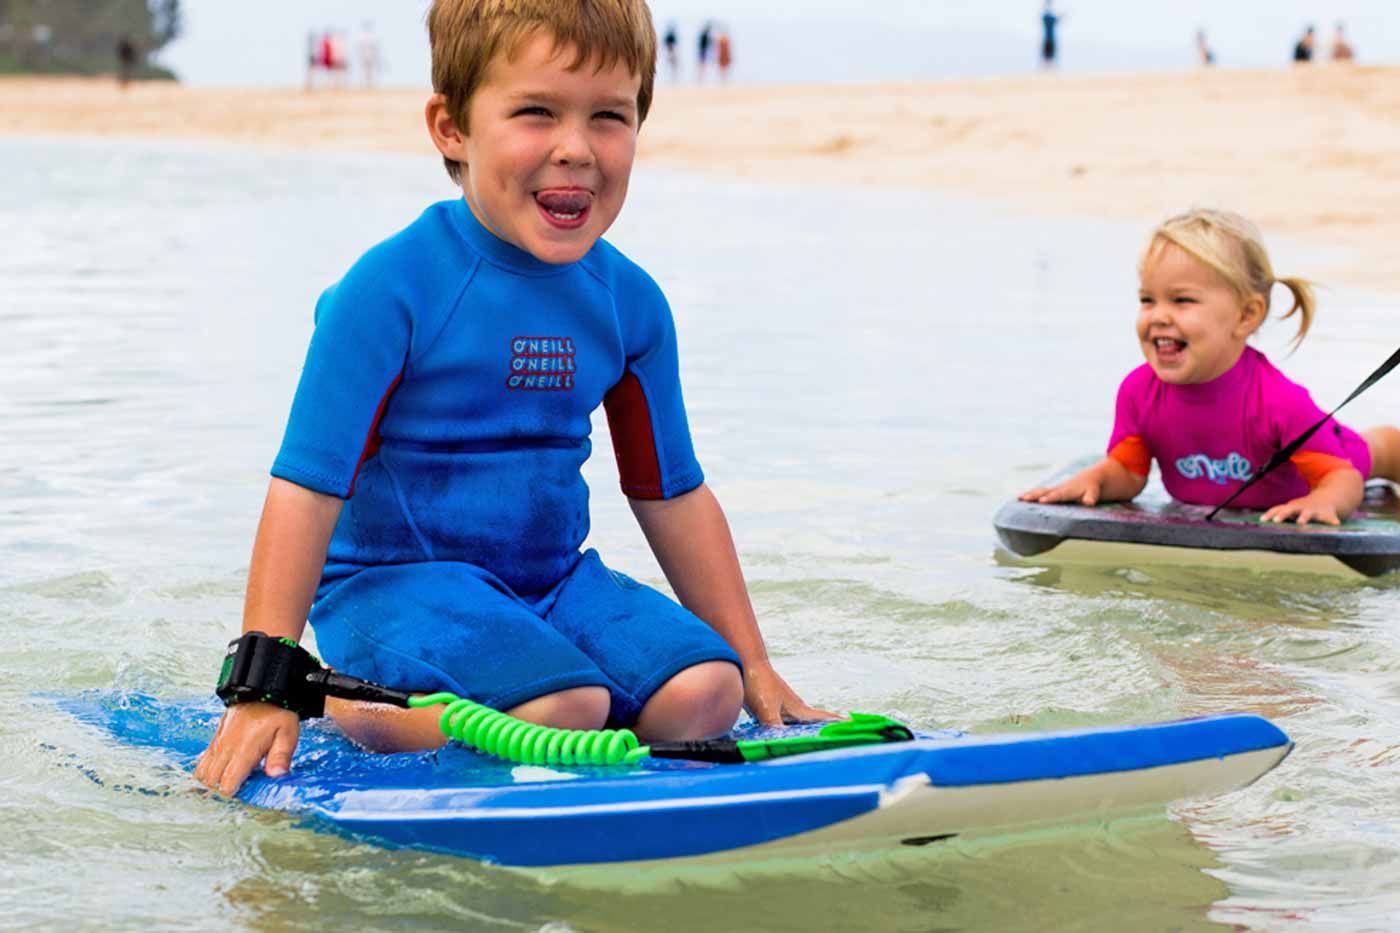 Wave Power Woop Bodyboard dēlis ir lietojams gan ar pleznām, gan bez. Piemērots jauniešiem un pieaugušajiem, braukšanai viļņos un krasta putās.